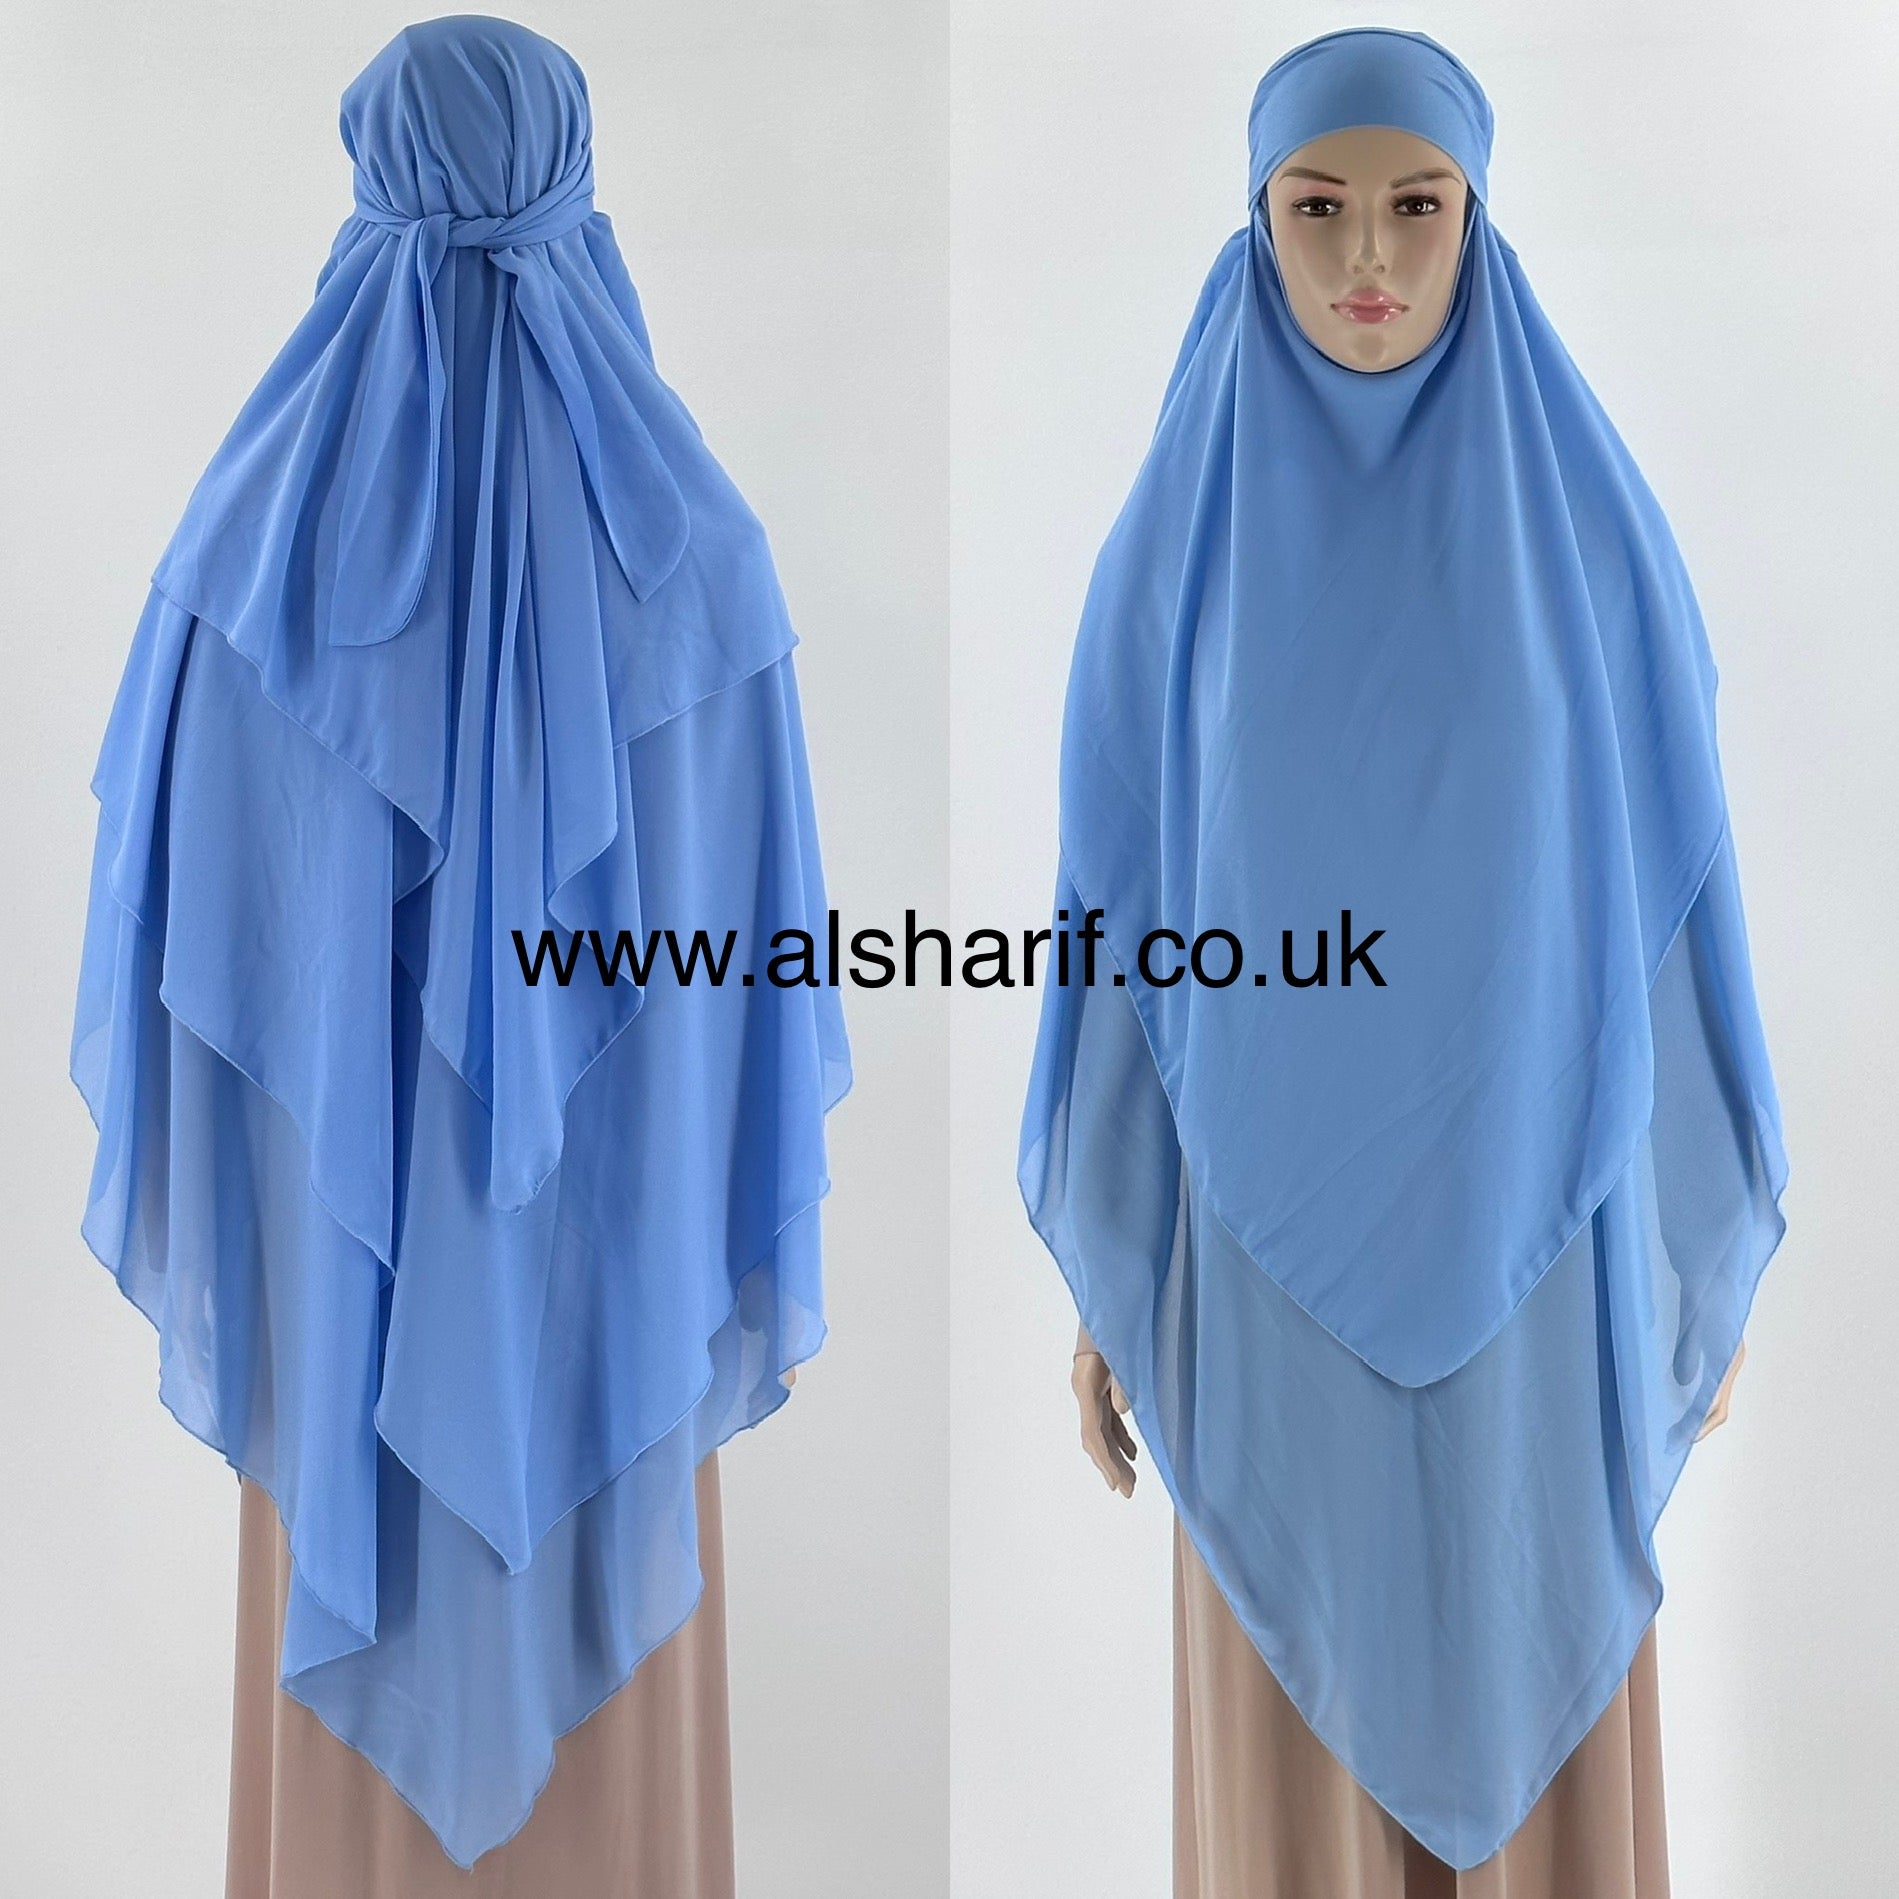 3 Layer Triangular Chiffon Khimar Hijab - KC9